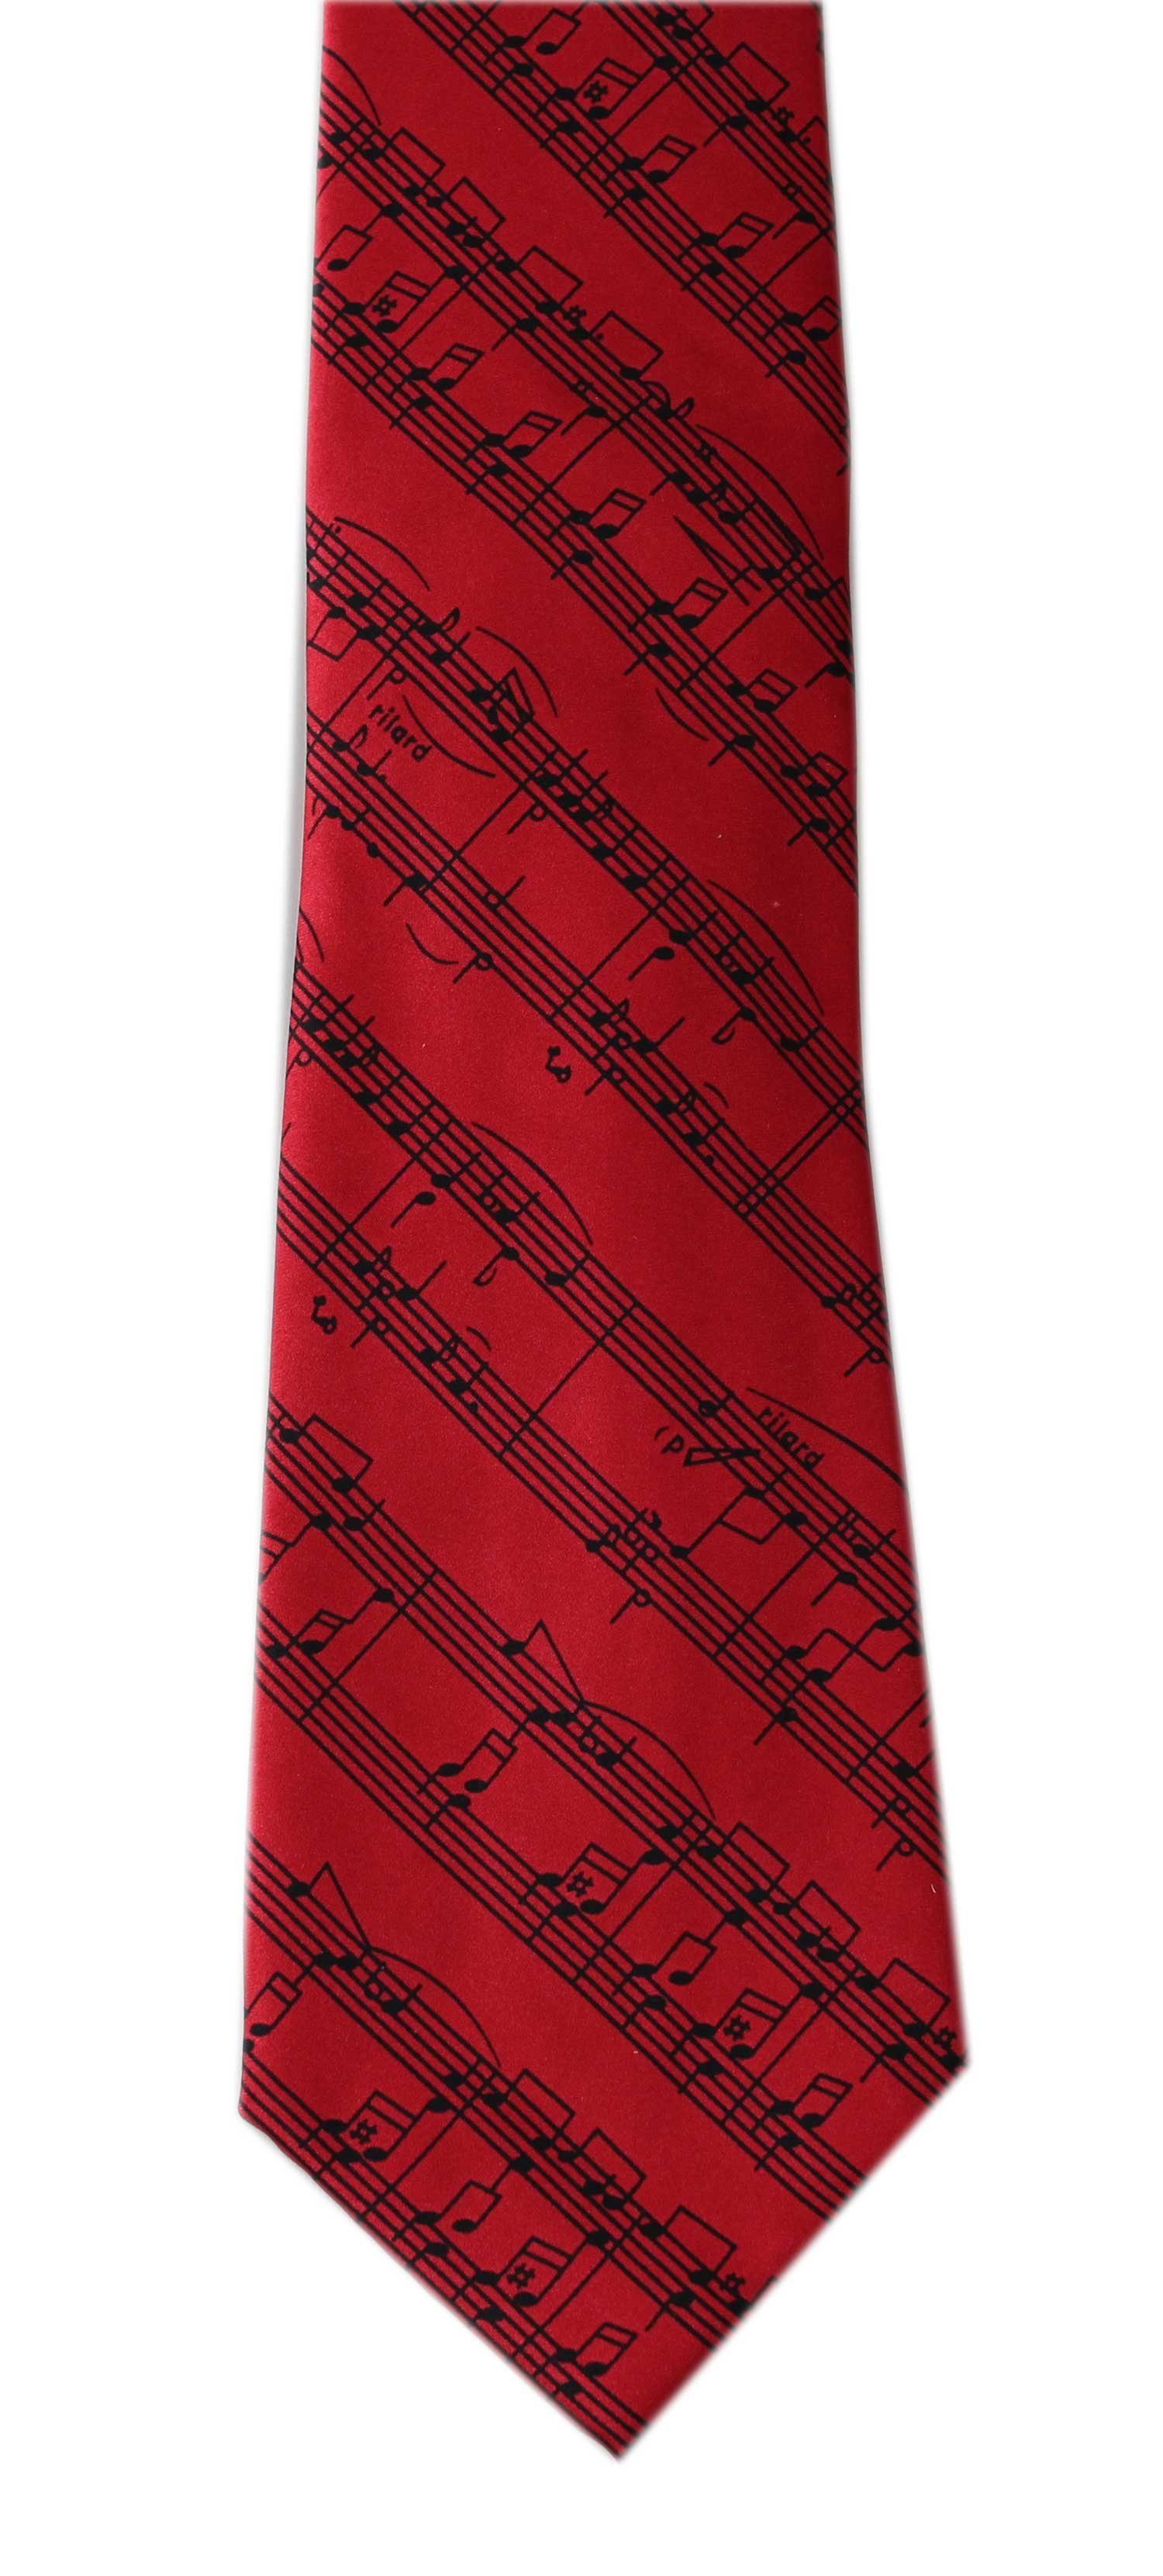 Notenlinien rot/schwarz für Krawatte Musiker mugesh Krawatte